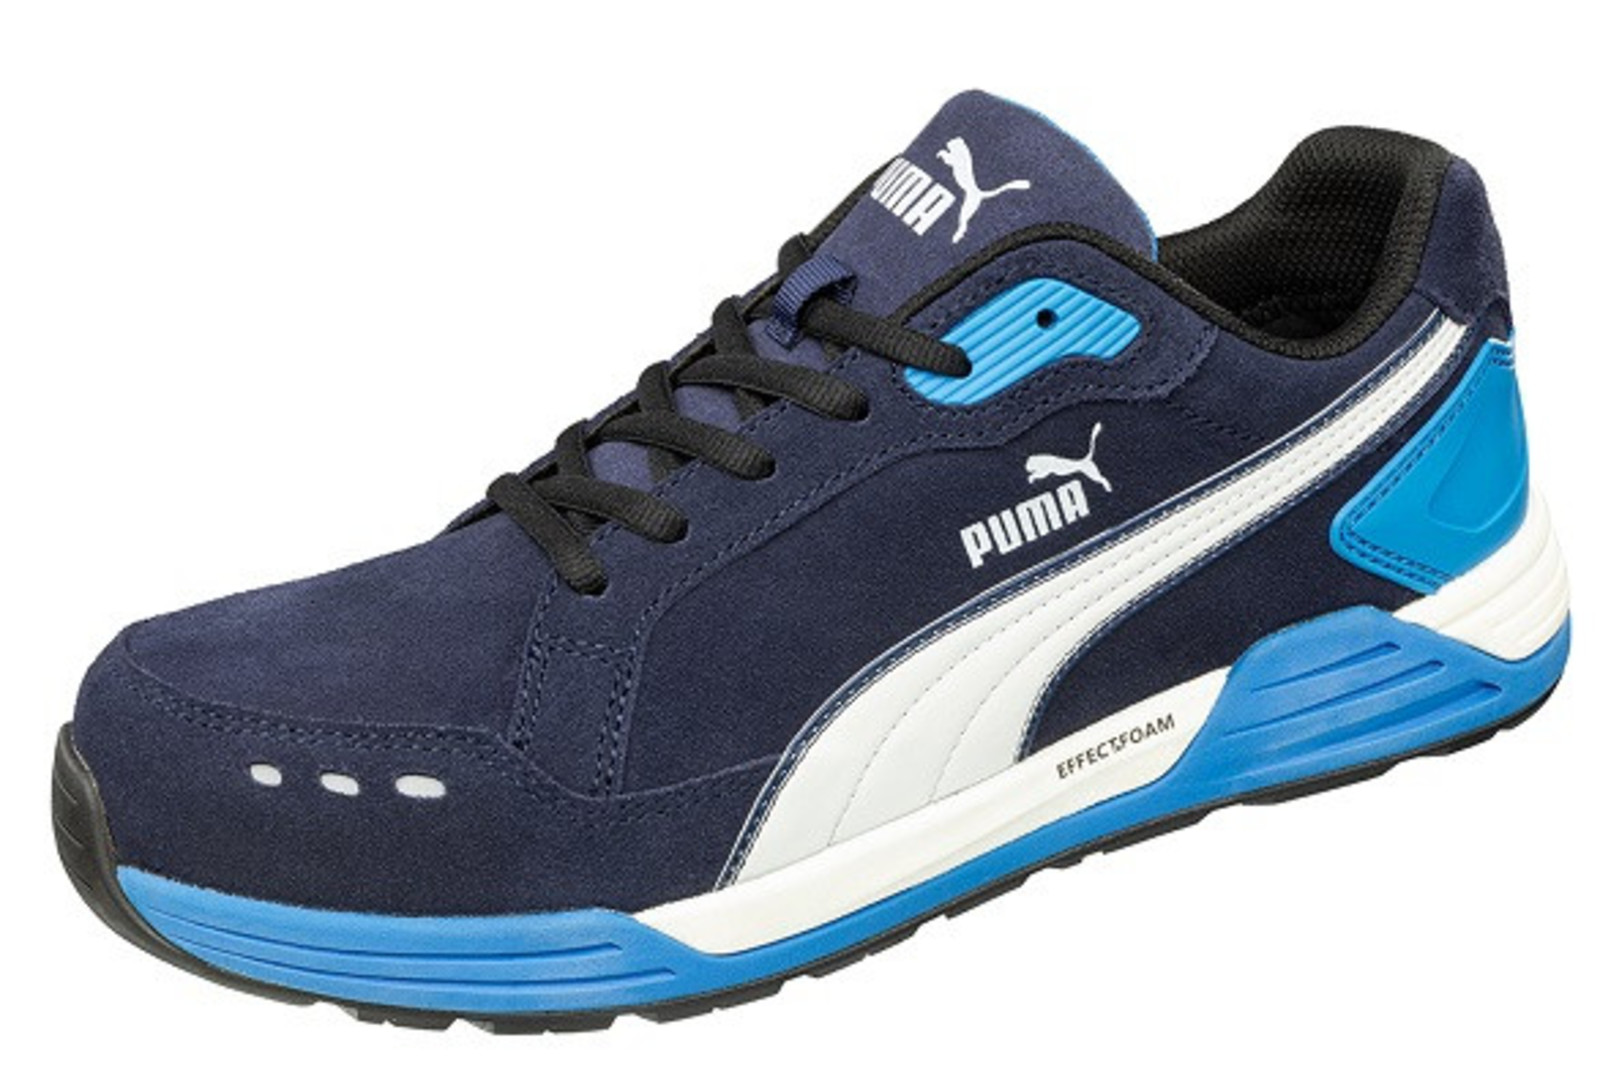 Bezpečnostná obuv Puma Airtwist S3 - veľkosť: 46, farba: modrá